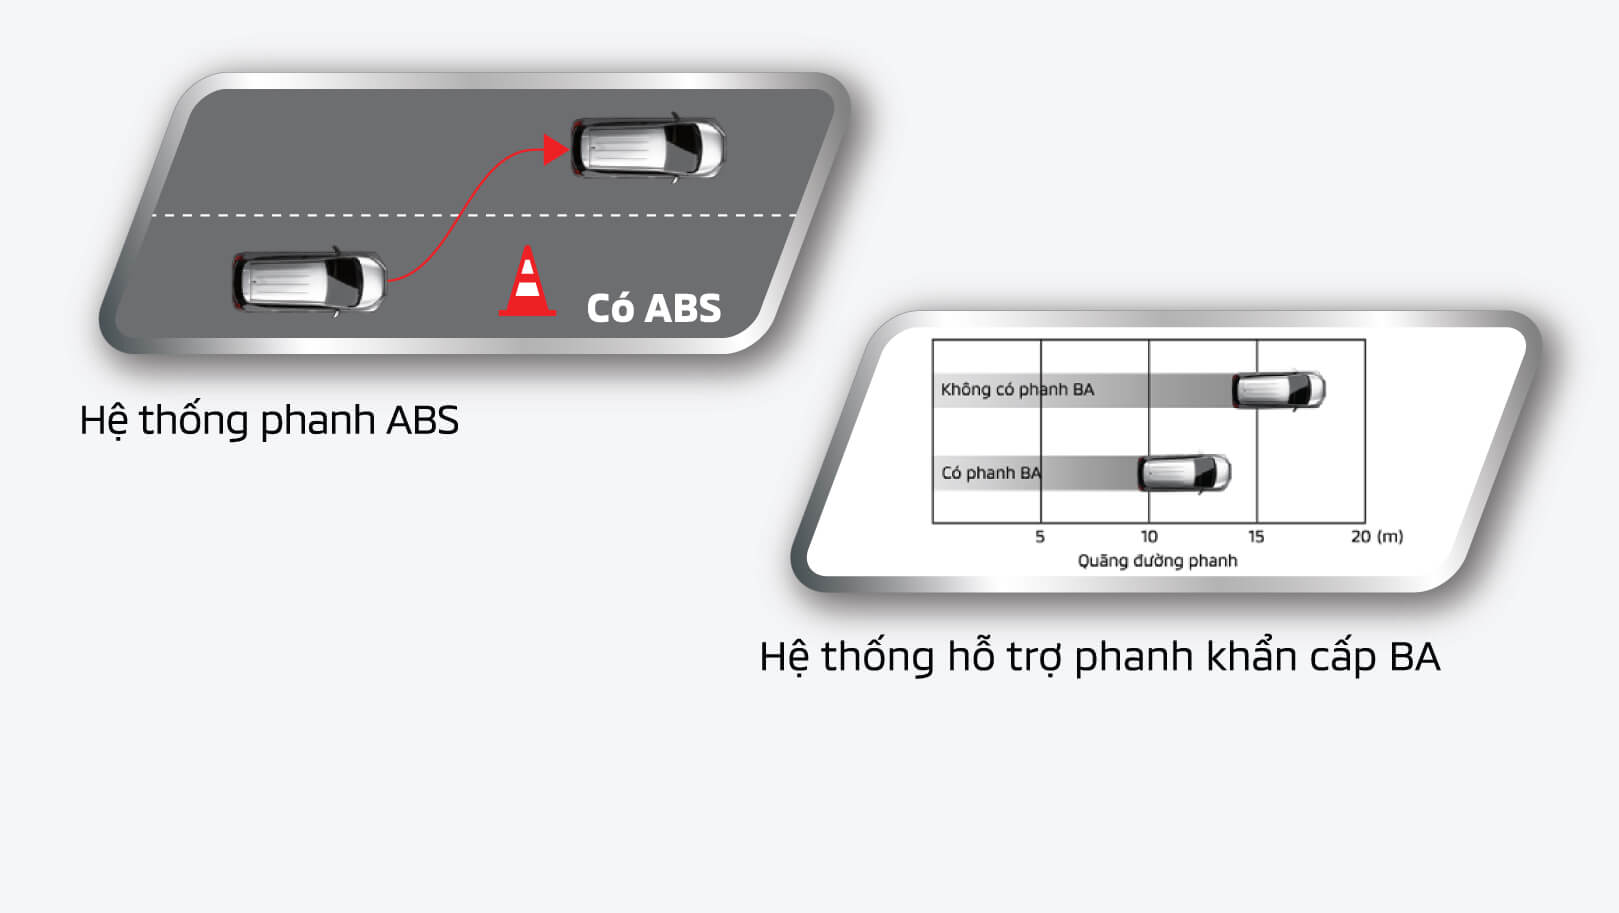 Hệ thống phanh ABS được trang bị trên Xpander